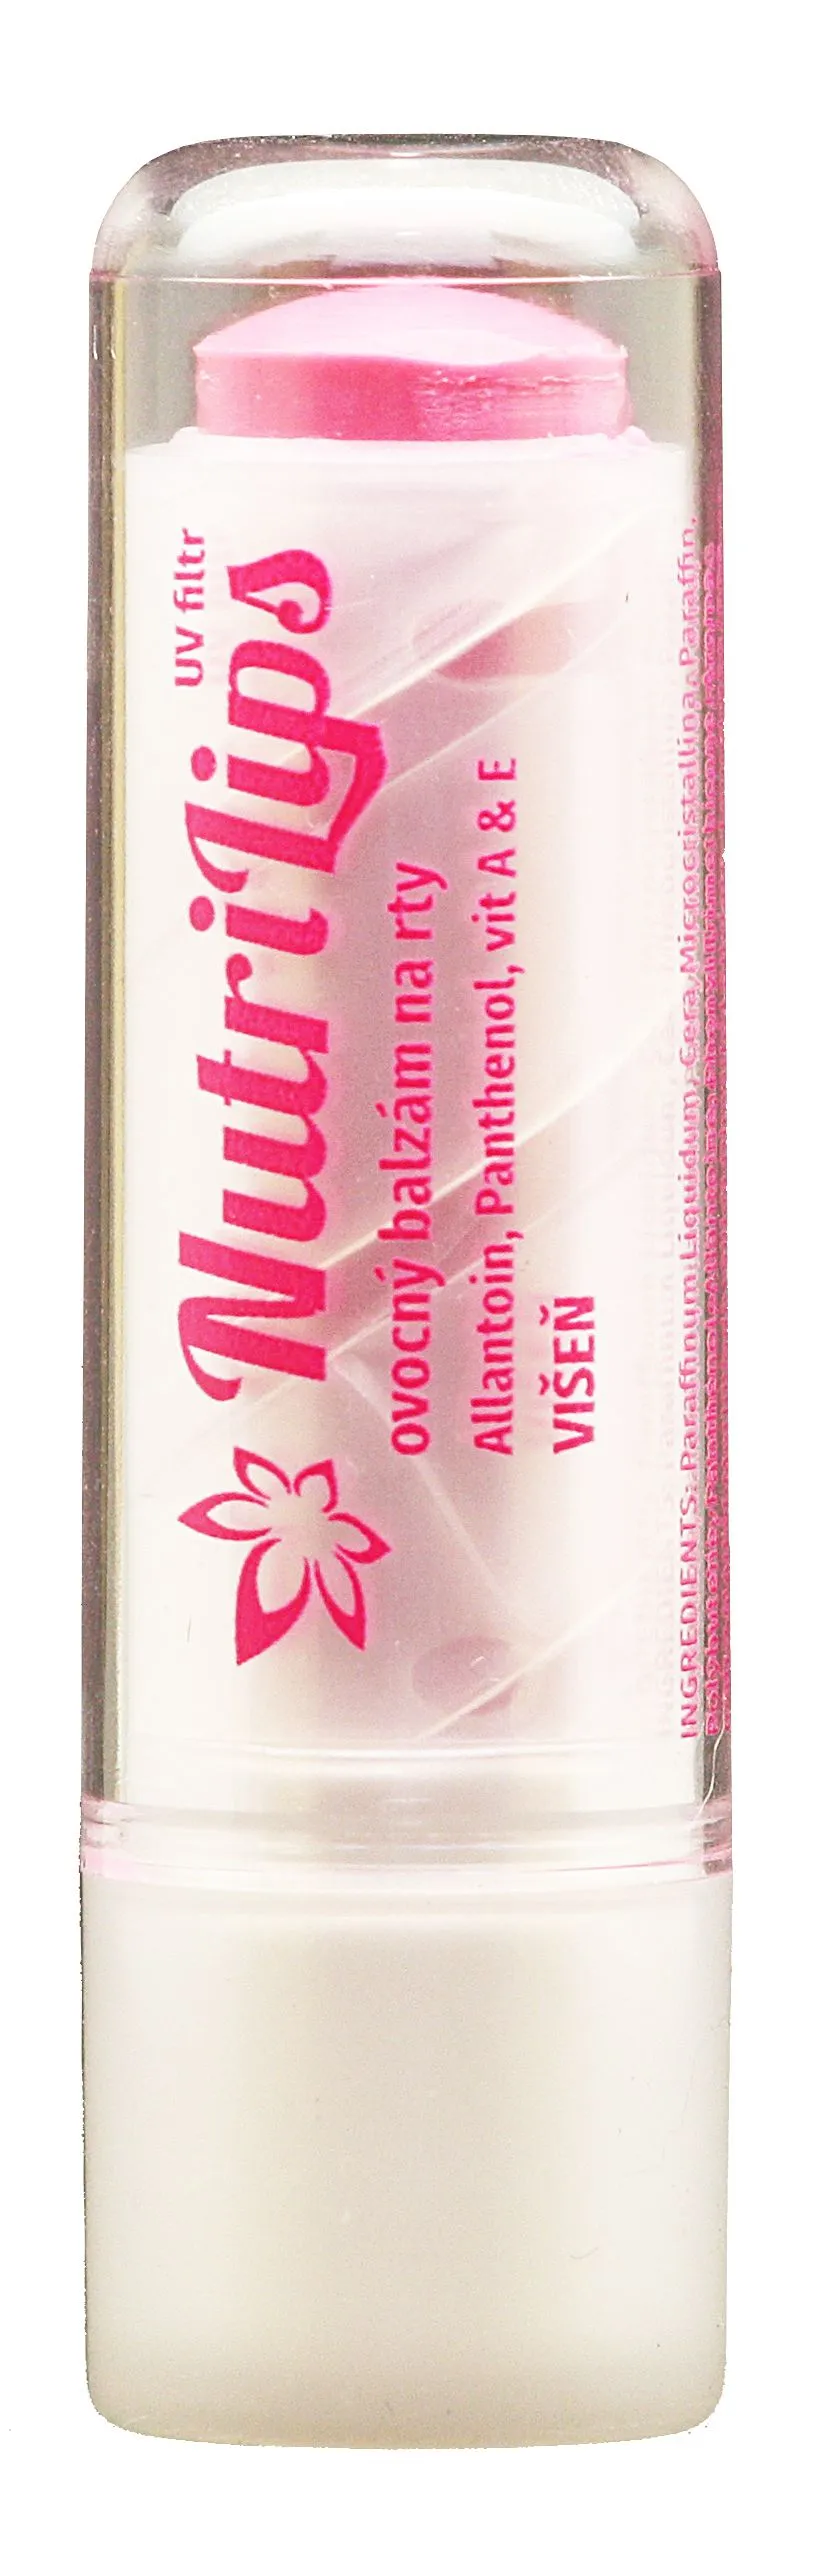 Nutricius NutriLips balzám na rty s panthenolem višeň 4,8 g